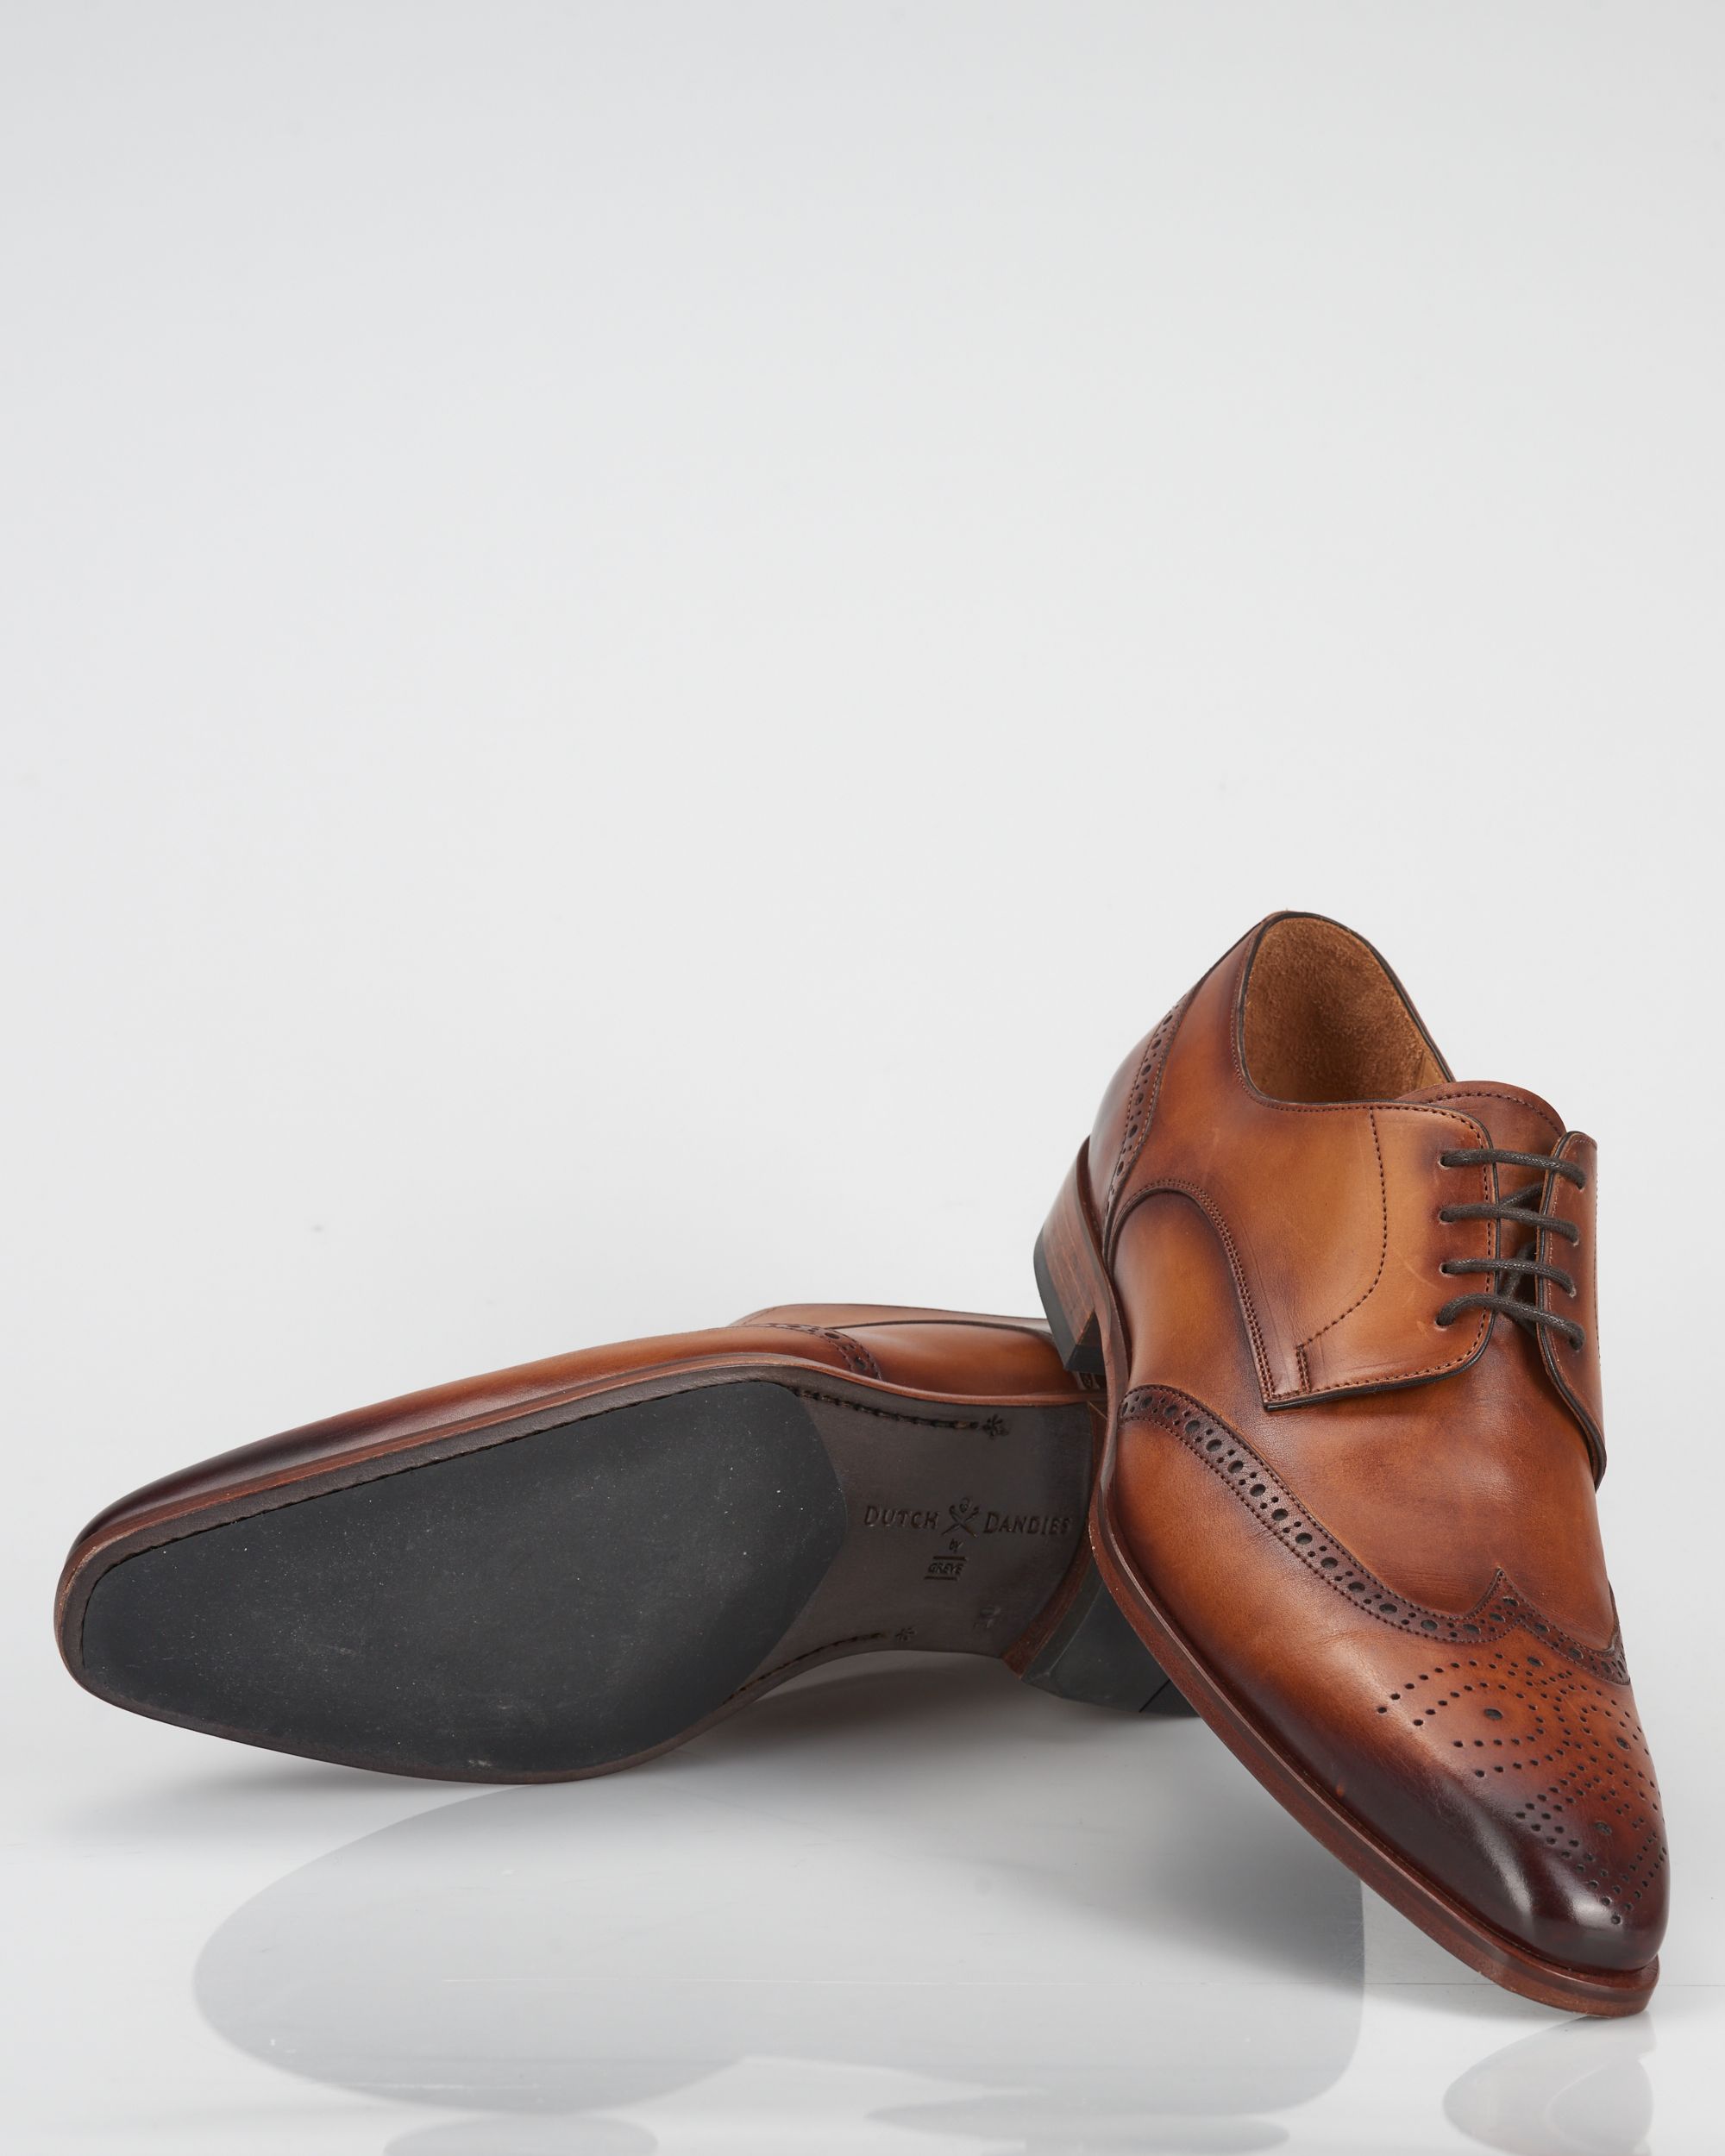 Dutch Dandies x Greve Geklede schoenen Cognac 059077-001-10